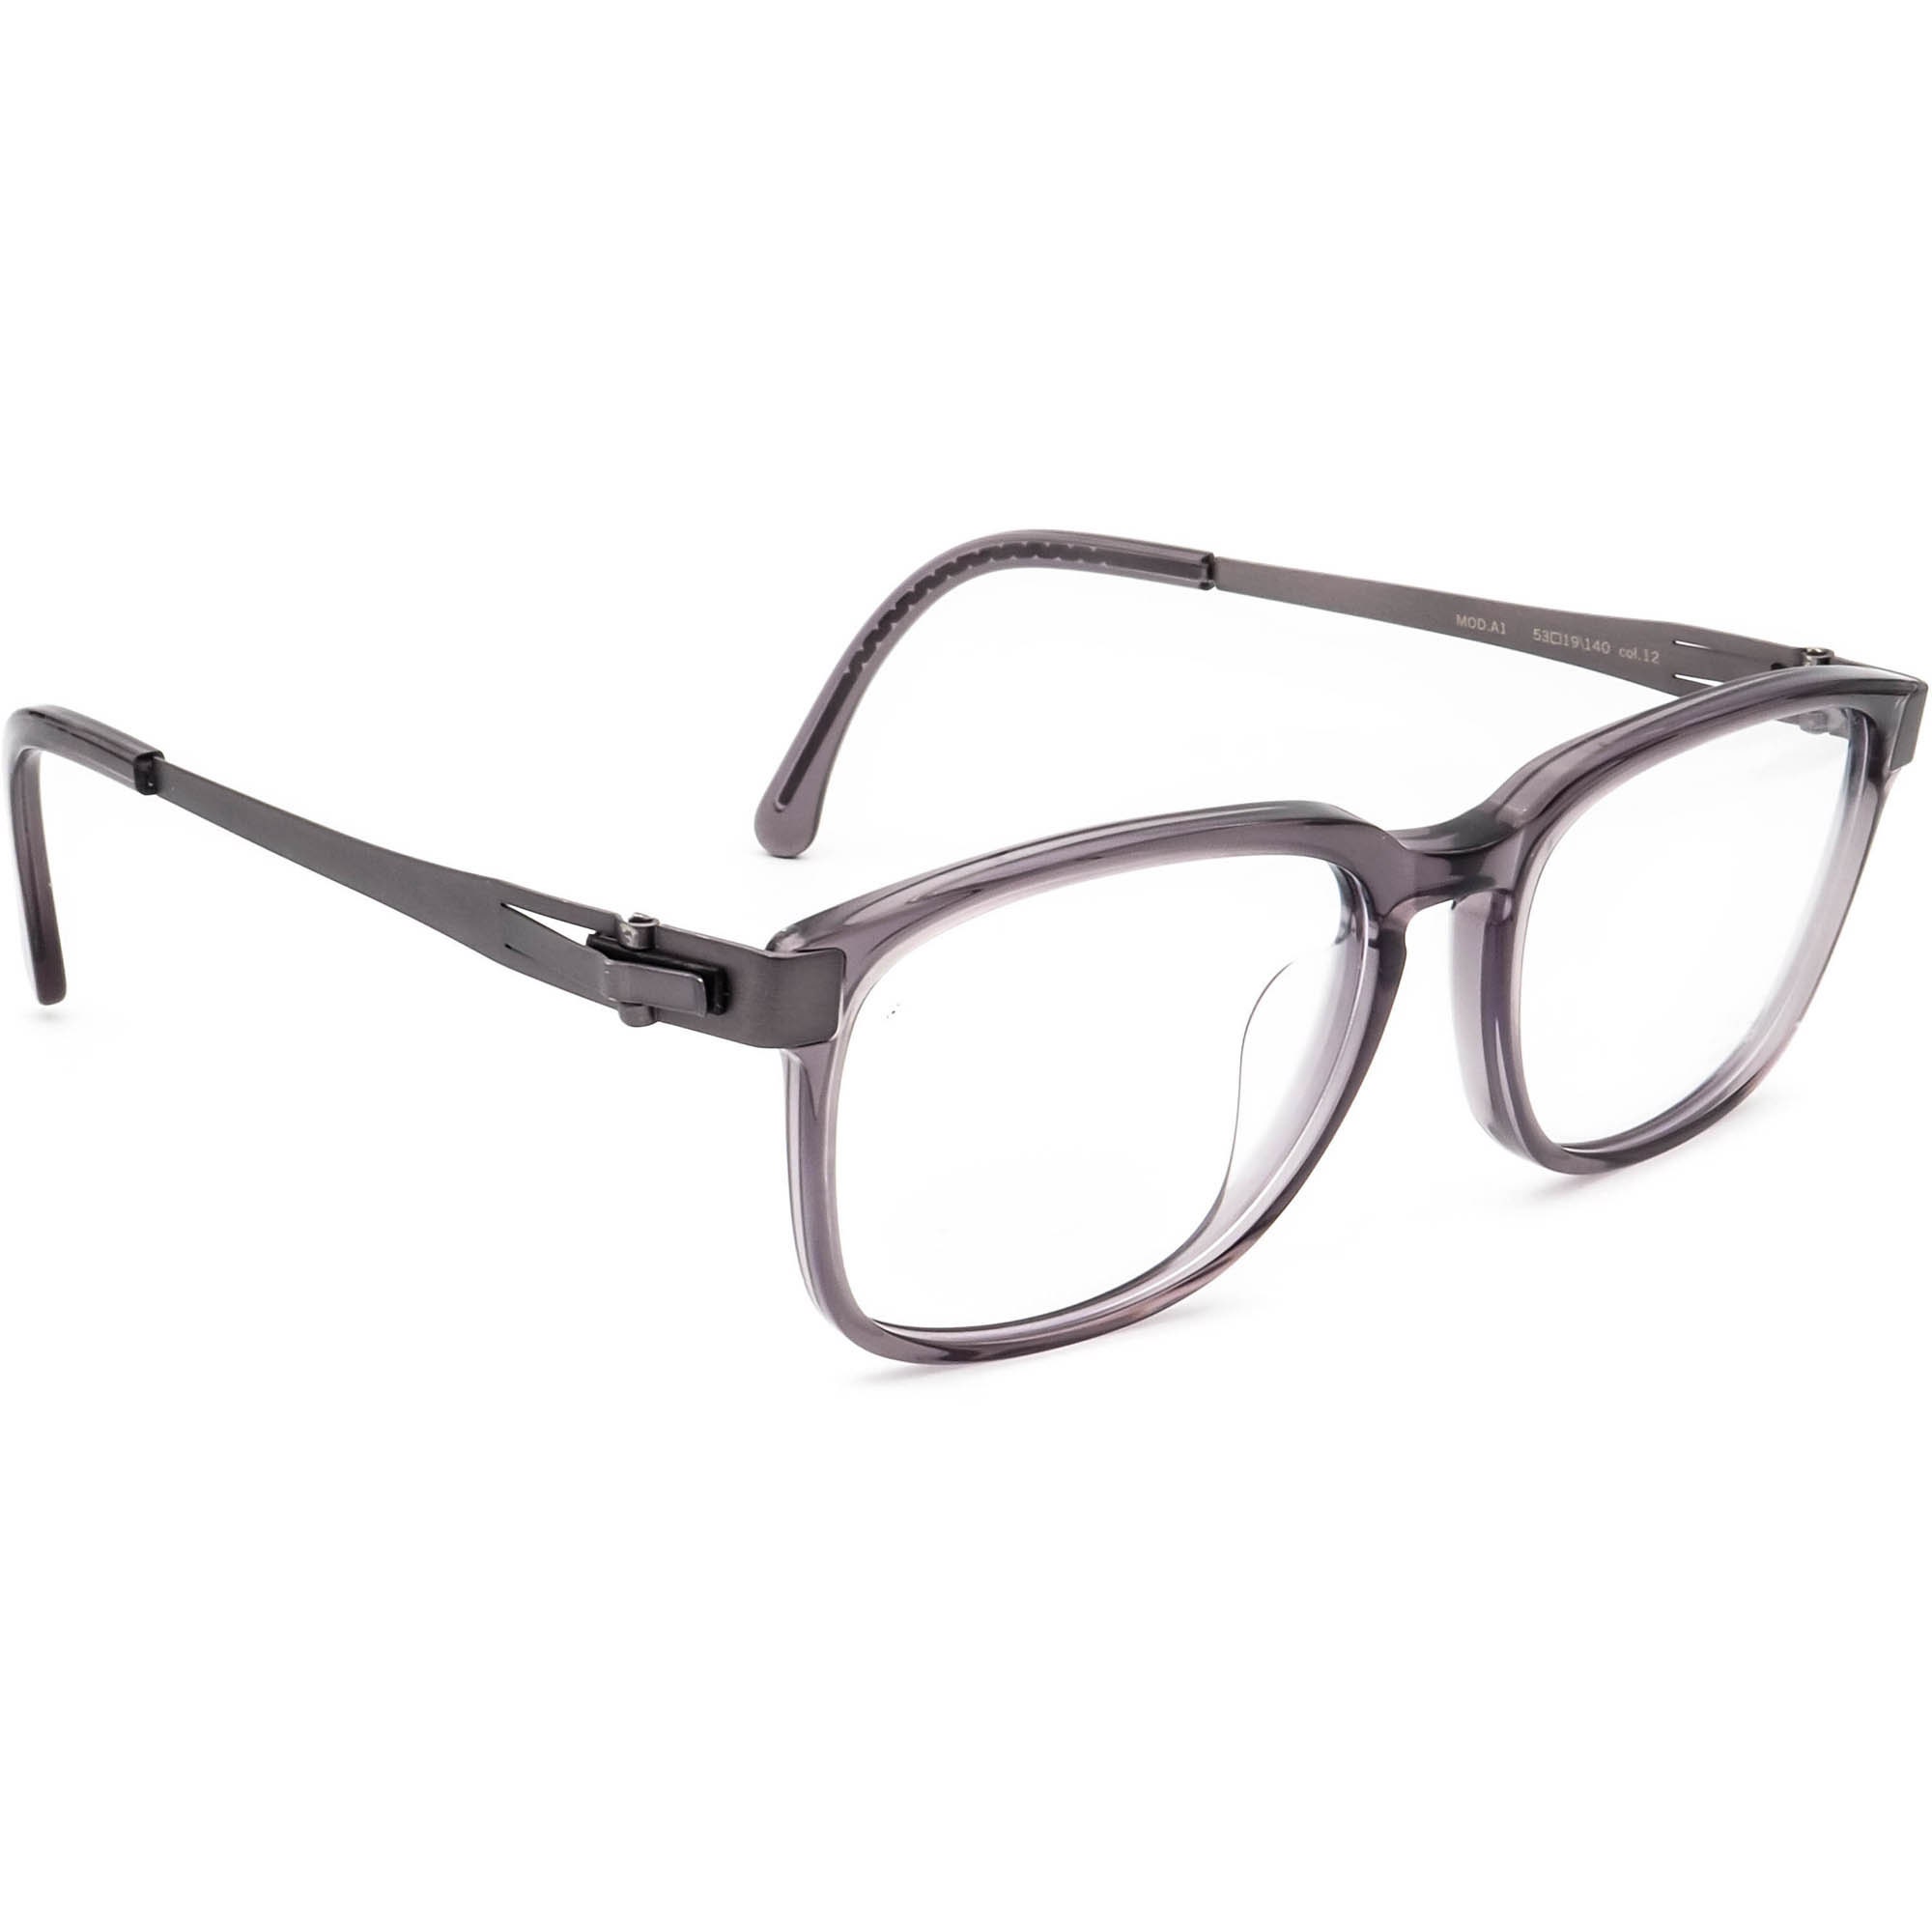 Ovvo Optics Eyeglasses MOD.A1 Col. Smokey Gray/gunmetal   Etsy